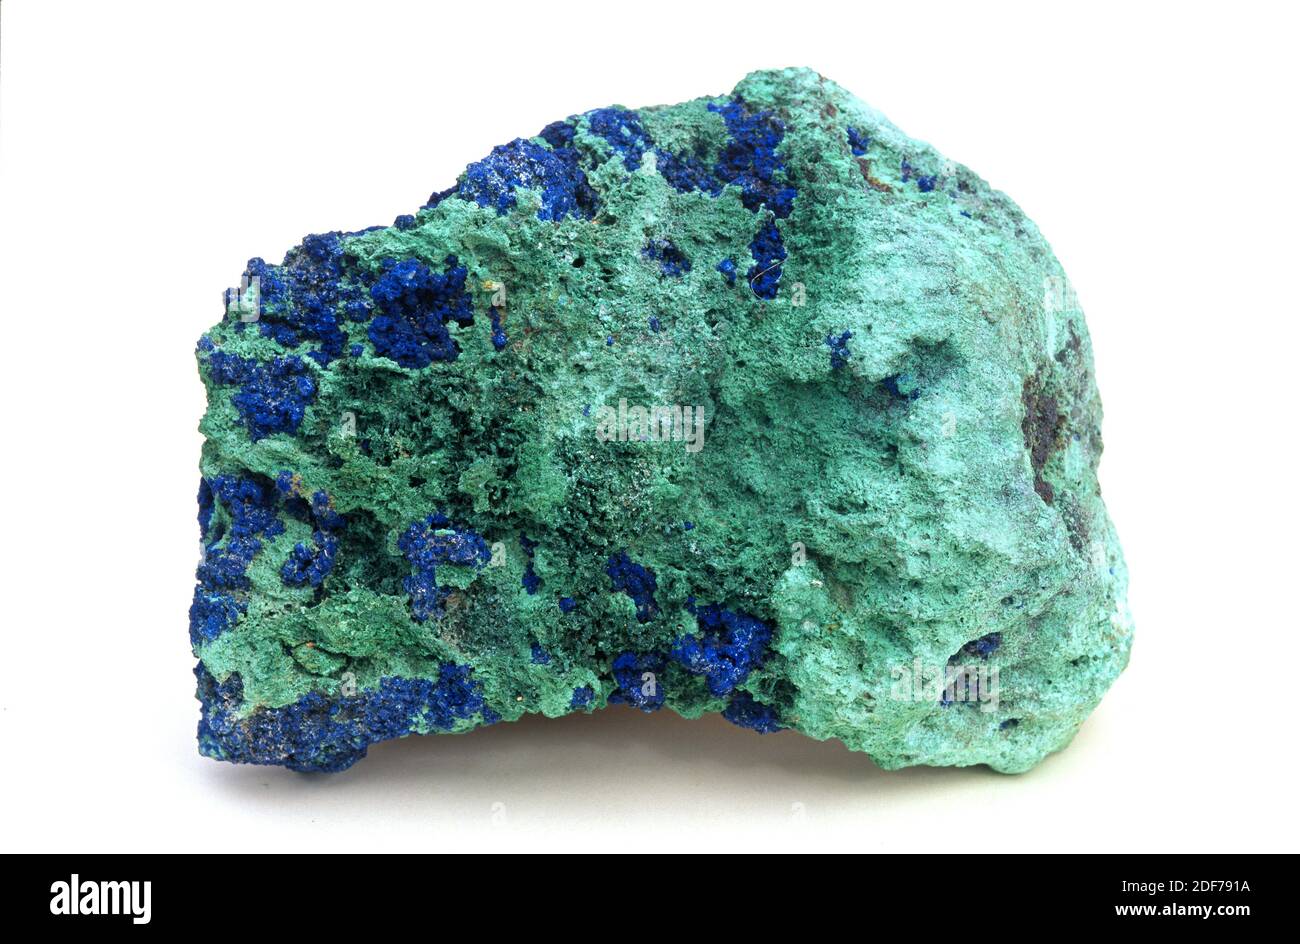 Minerale blu verde immagini e fotografie stock ad alta risoluzione - Alamy